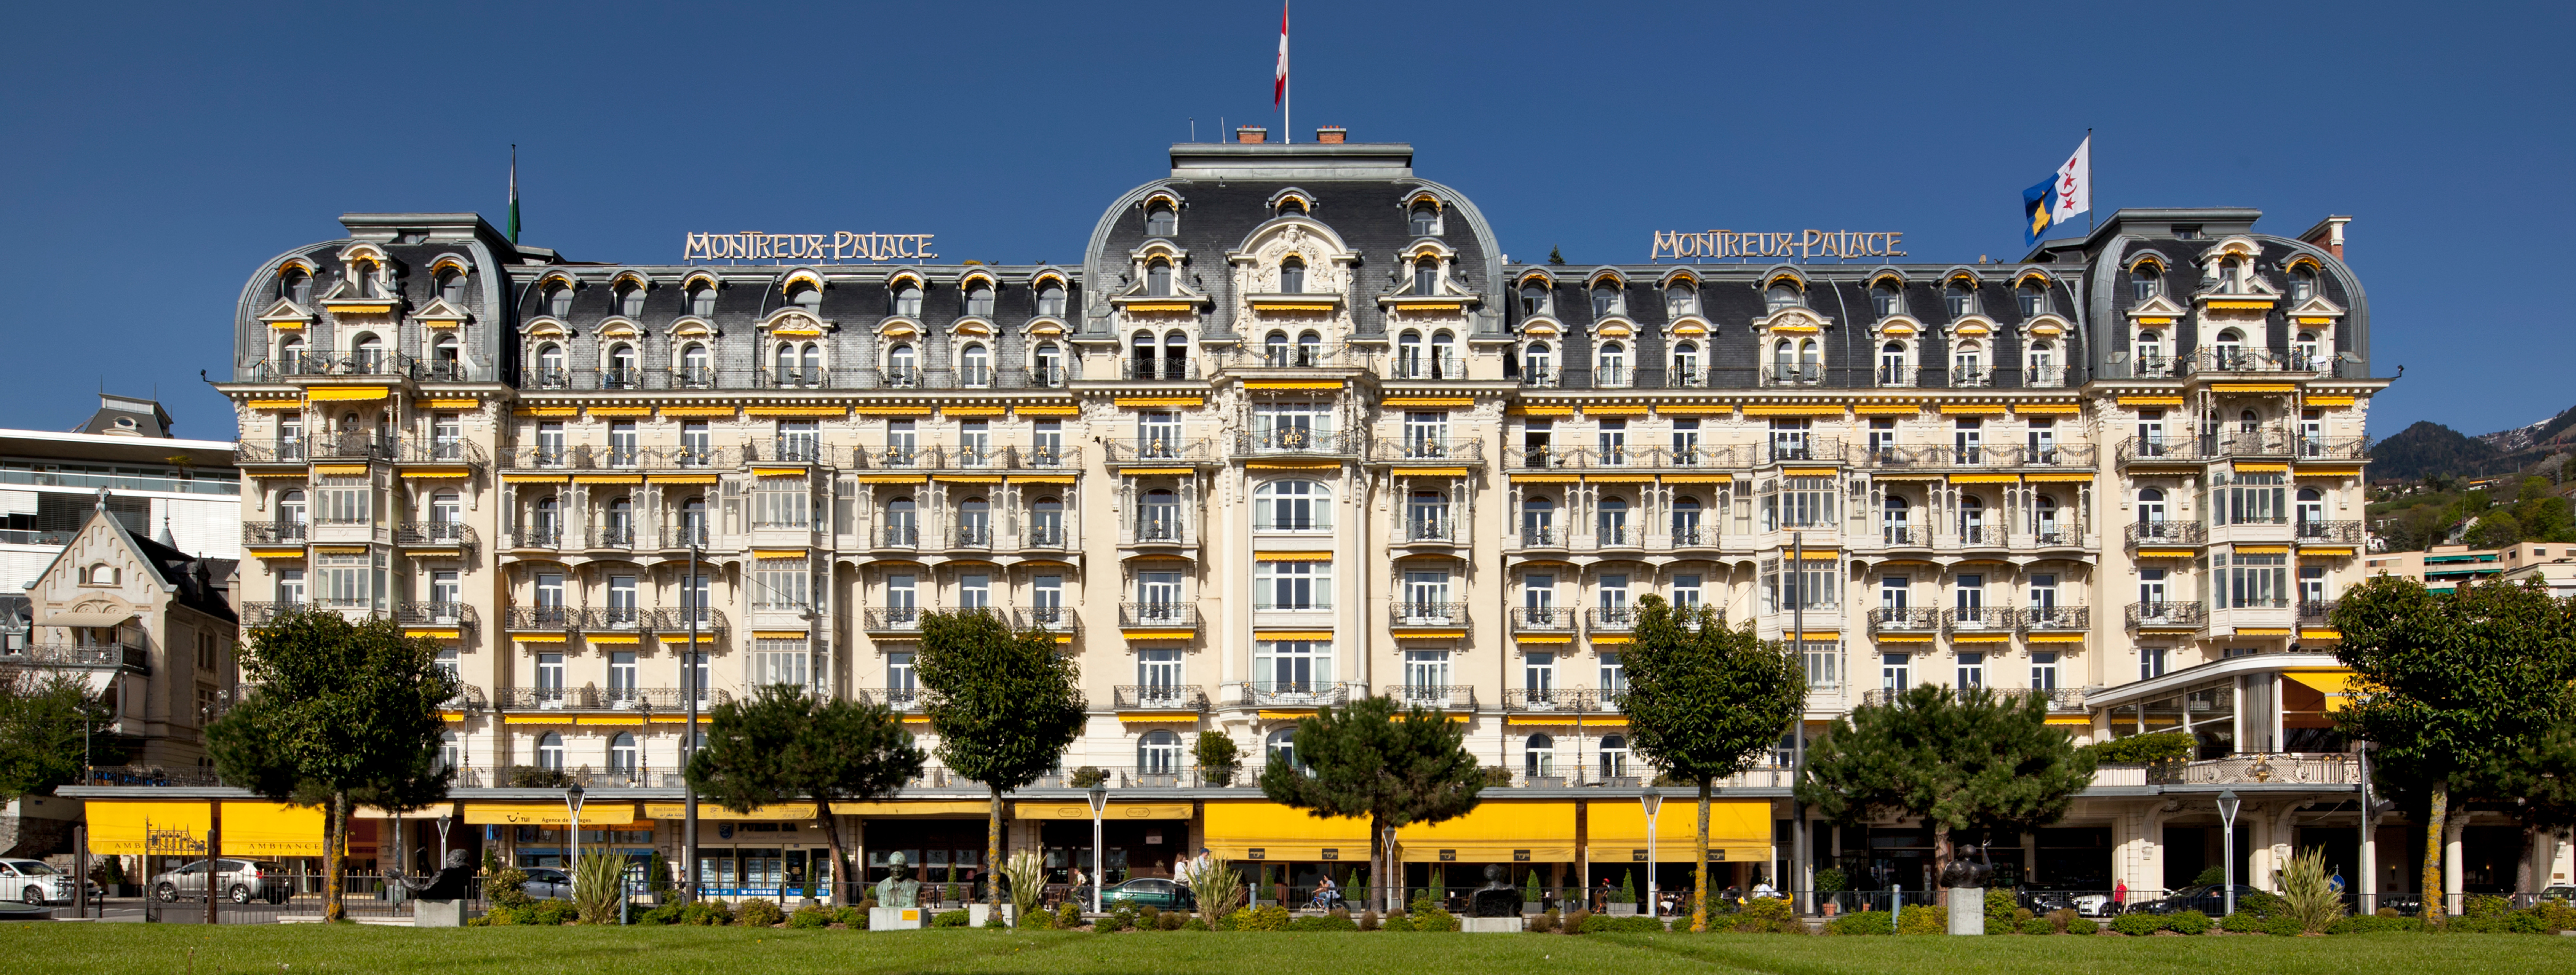 Montreux Hotel -5* Luxury Hotel Lake Geneva - Fairmont Montreux Palace